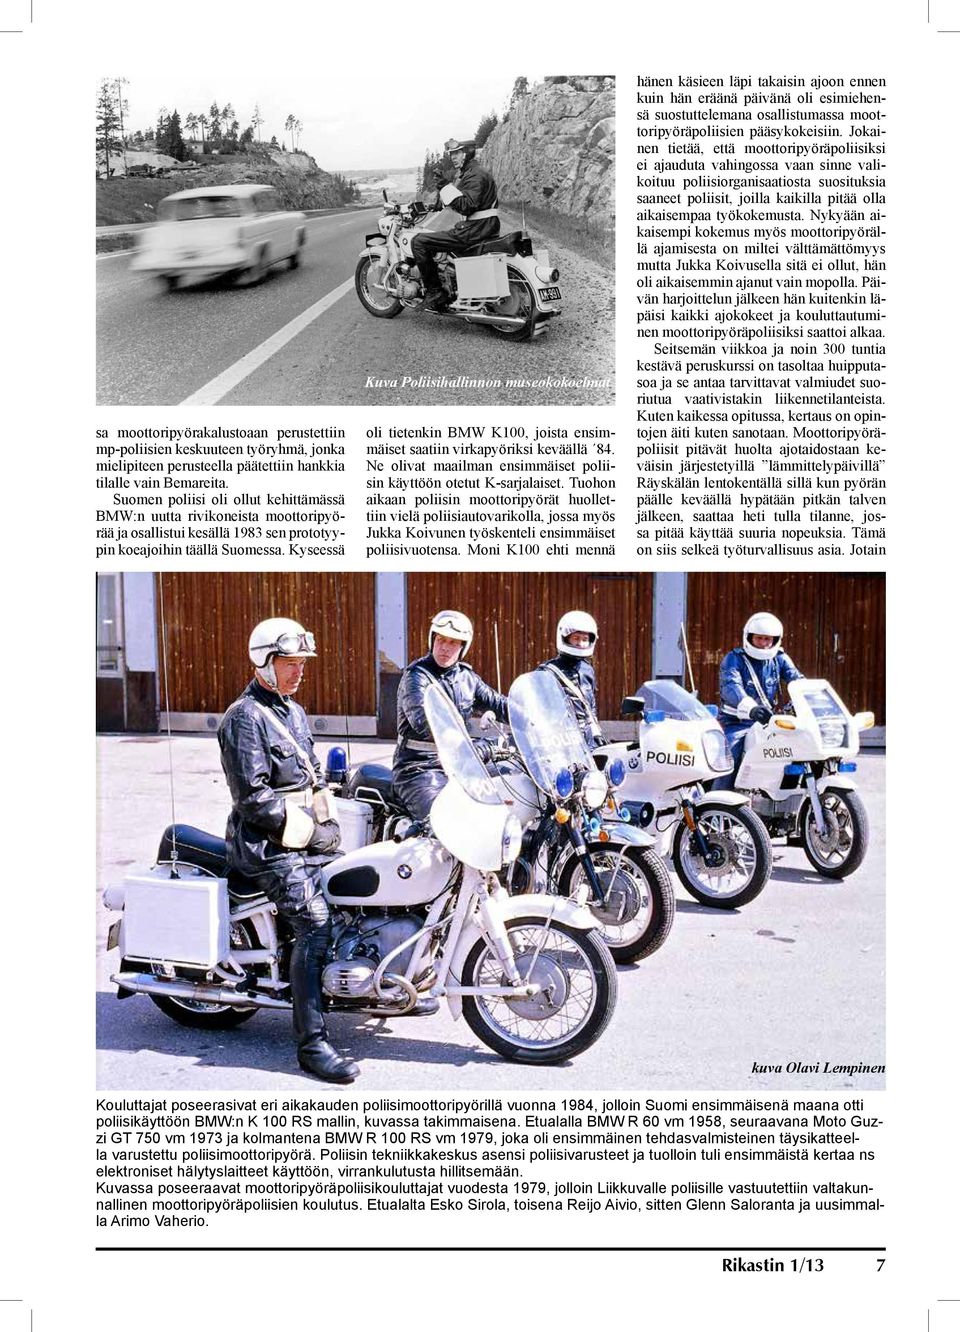 Kyseessä Kuva Poliisihallinnon museokokoelmat oli tietenkin BMW K100, joista ensimmäiset saatiin virkapyöriksi keväällä 84. Ne olivat maailman ensimmäiset poliisin käyttöön otetut K-sarjalaiset.